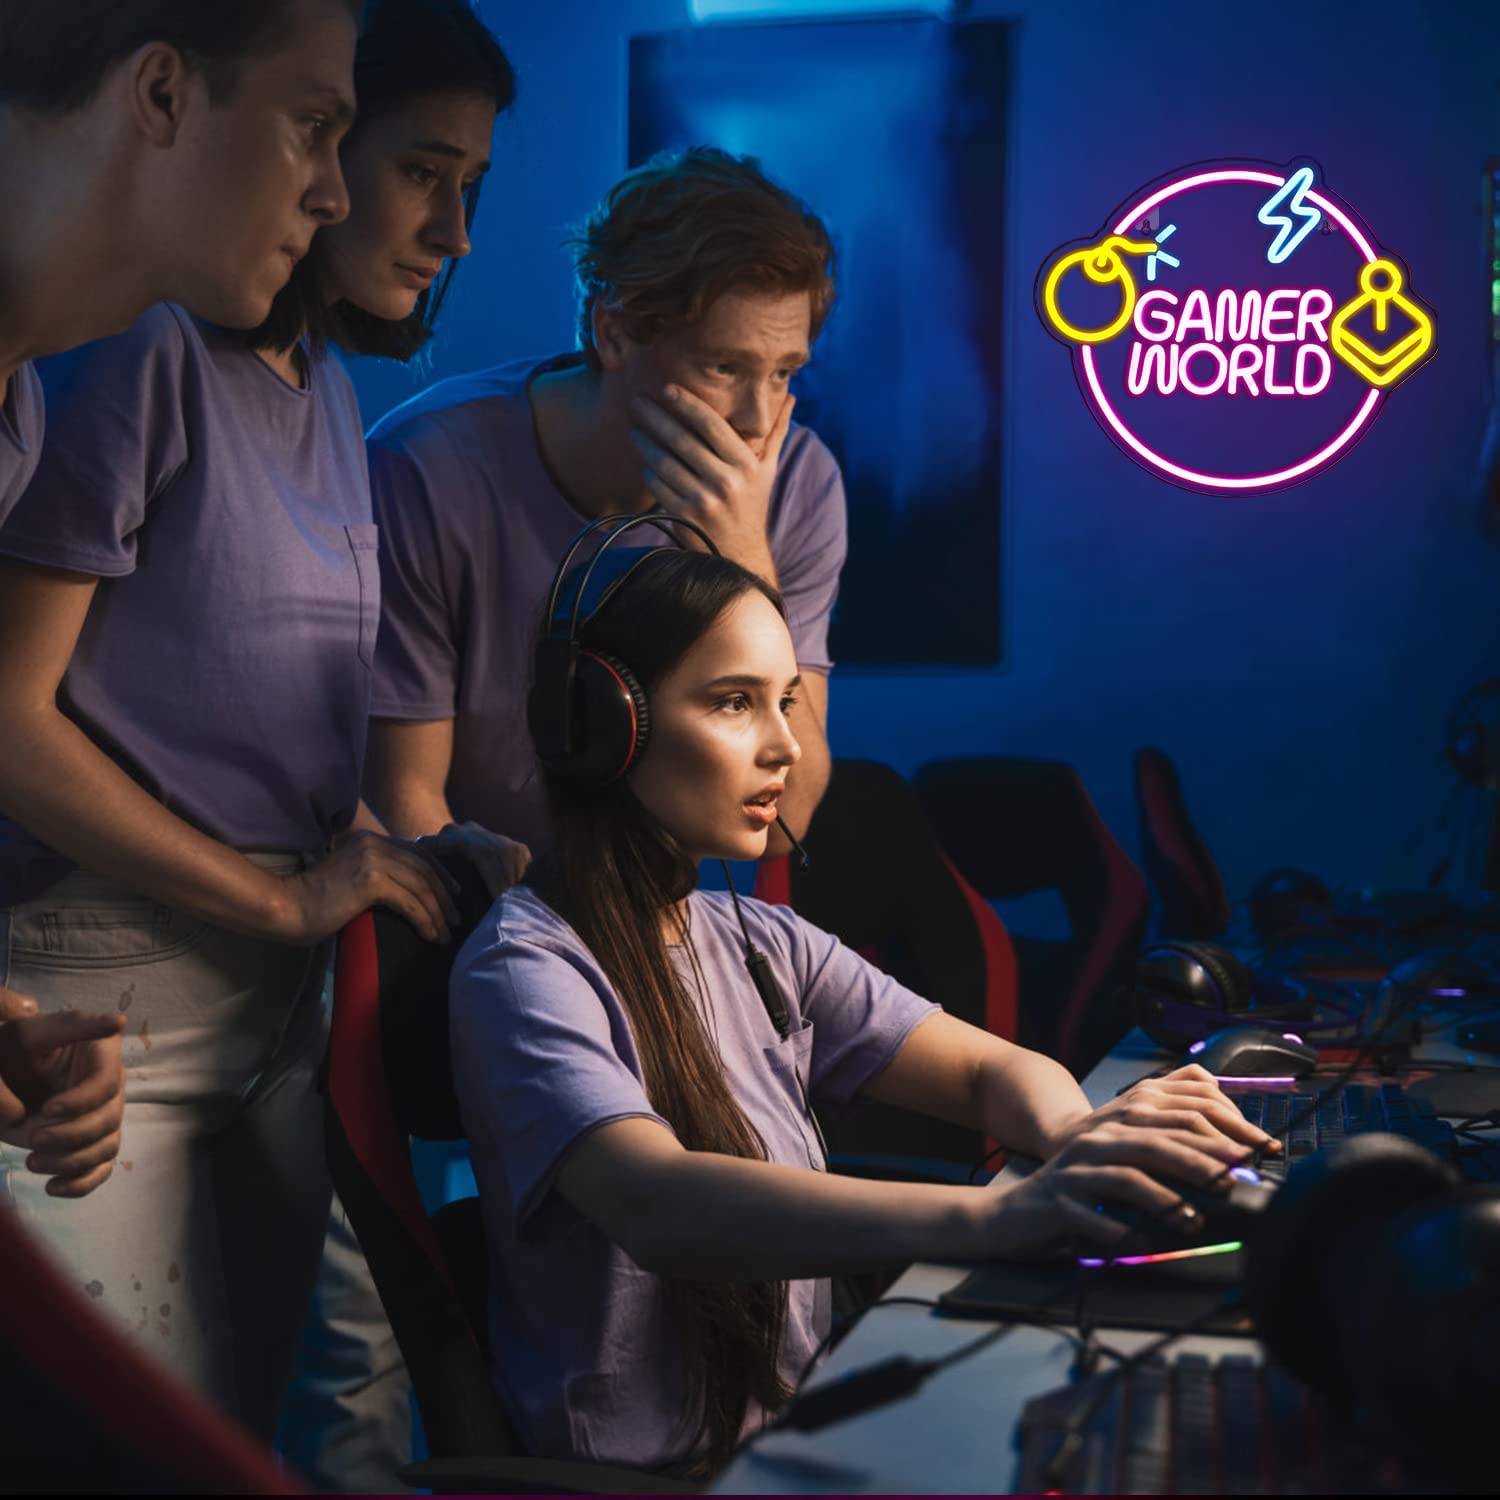 NEONIP-Insegna al neon LED Gamer World fatta a mano al 100%.